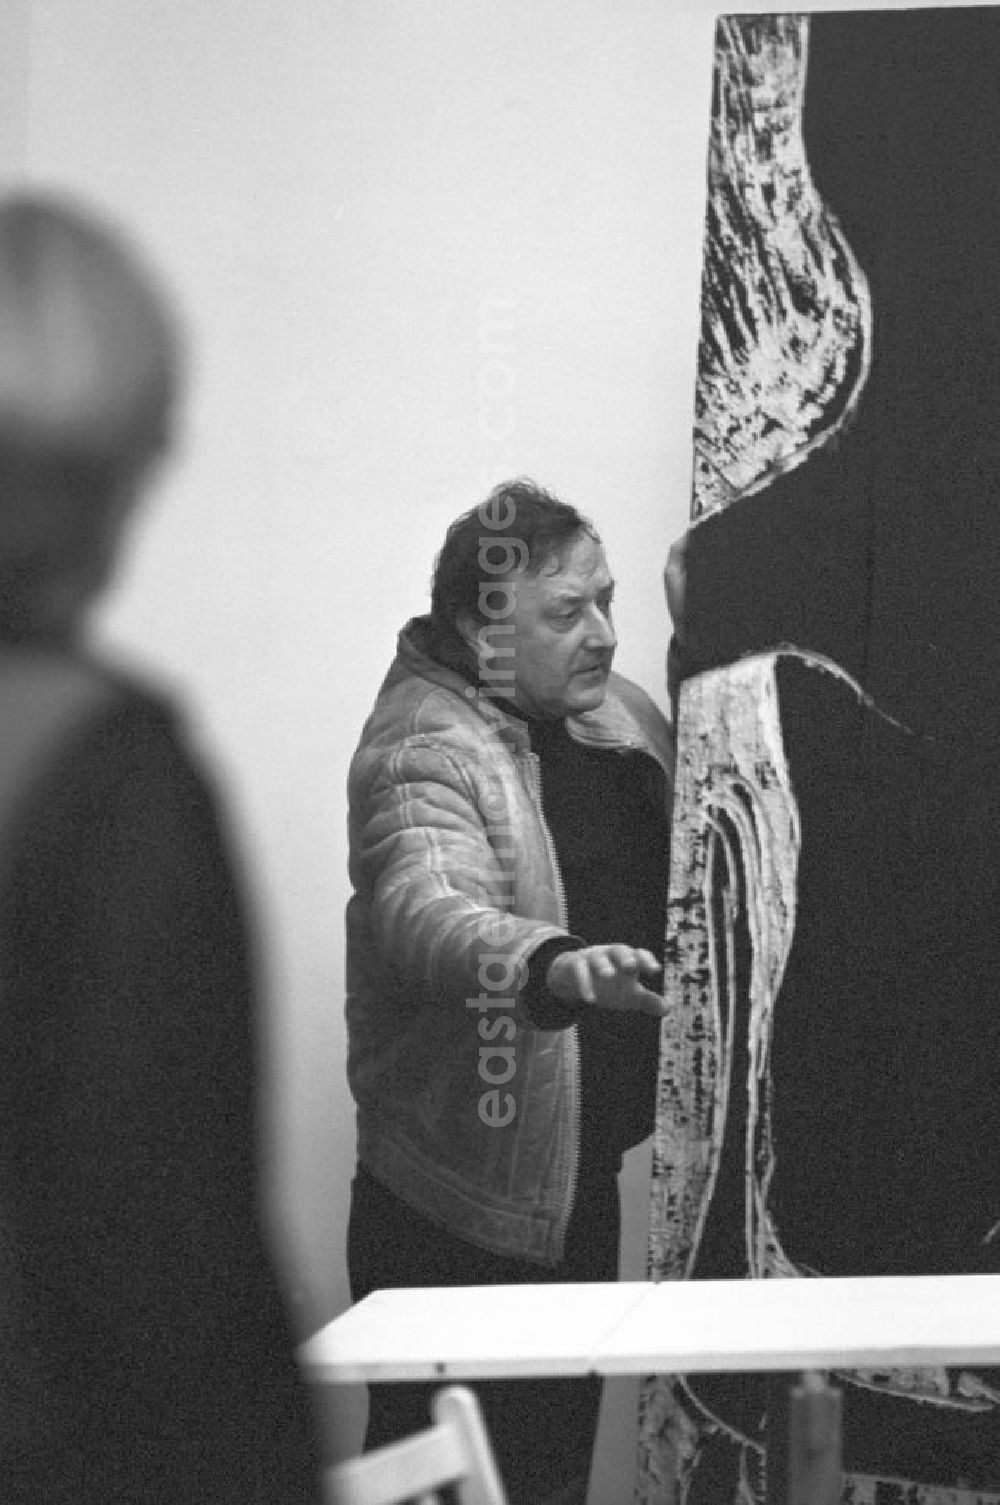 Berlin: Der Holzgestalter Hans Brockhage auf einer Ausstellung in der Galerie Unter den Linden (UdL) in Berlin.